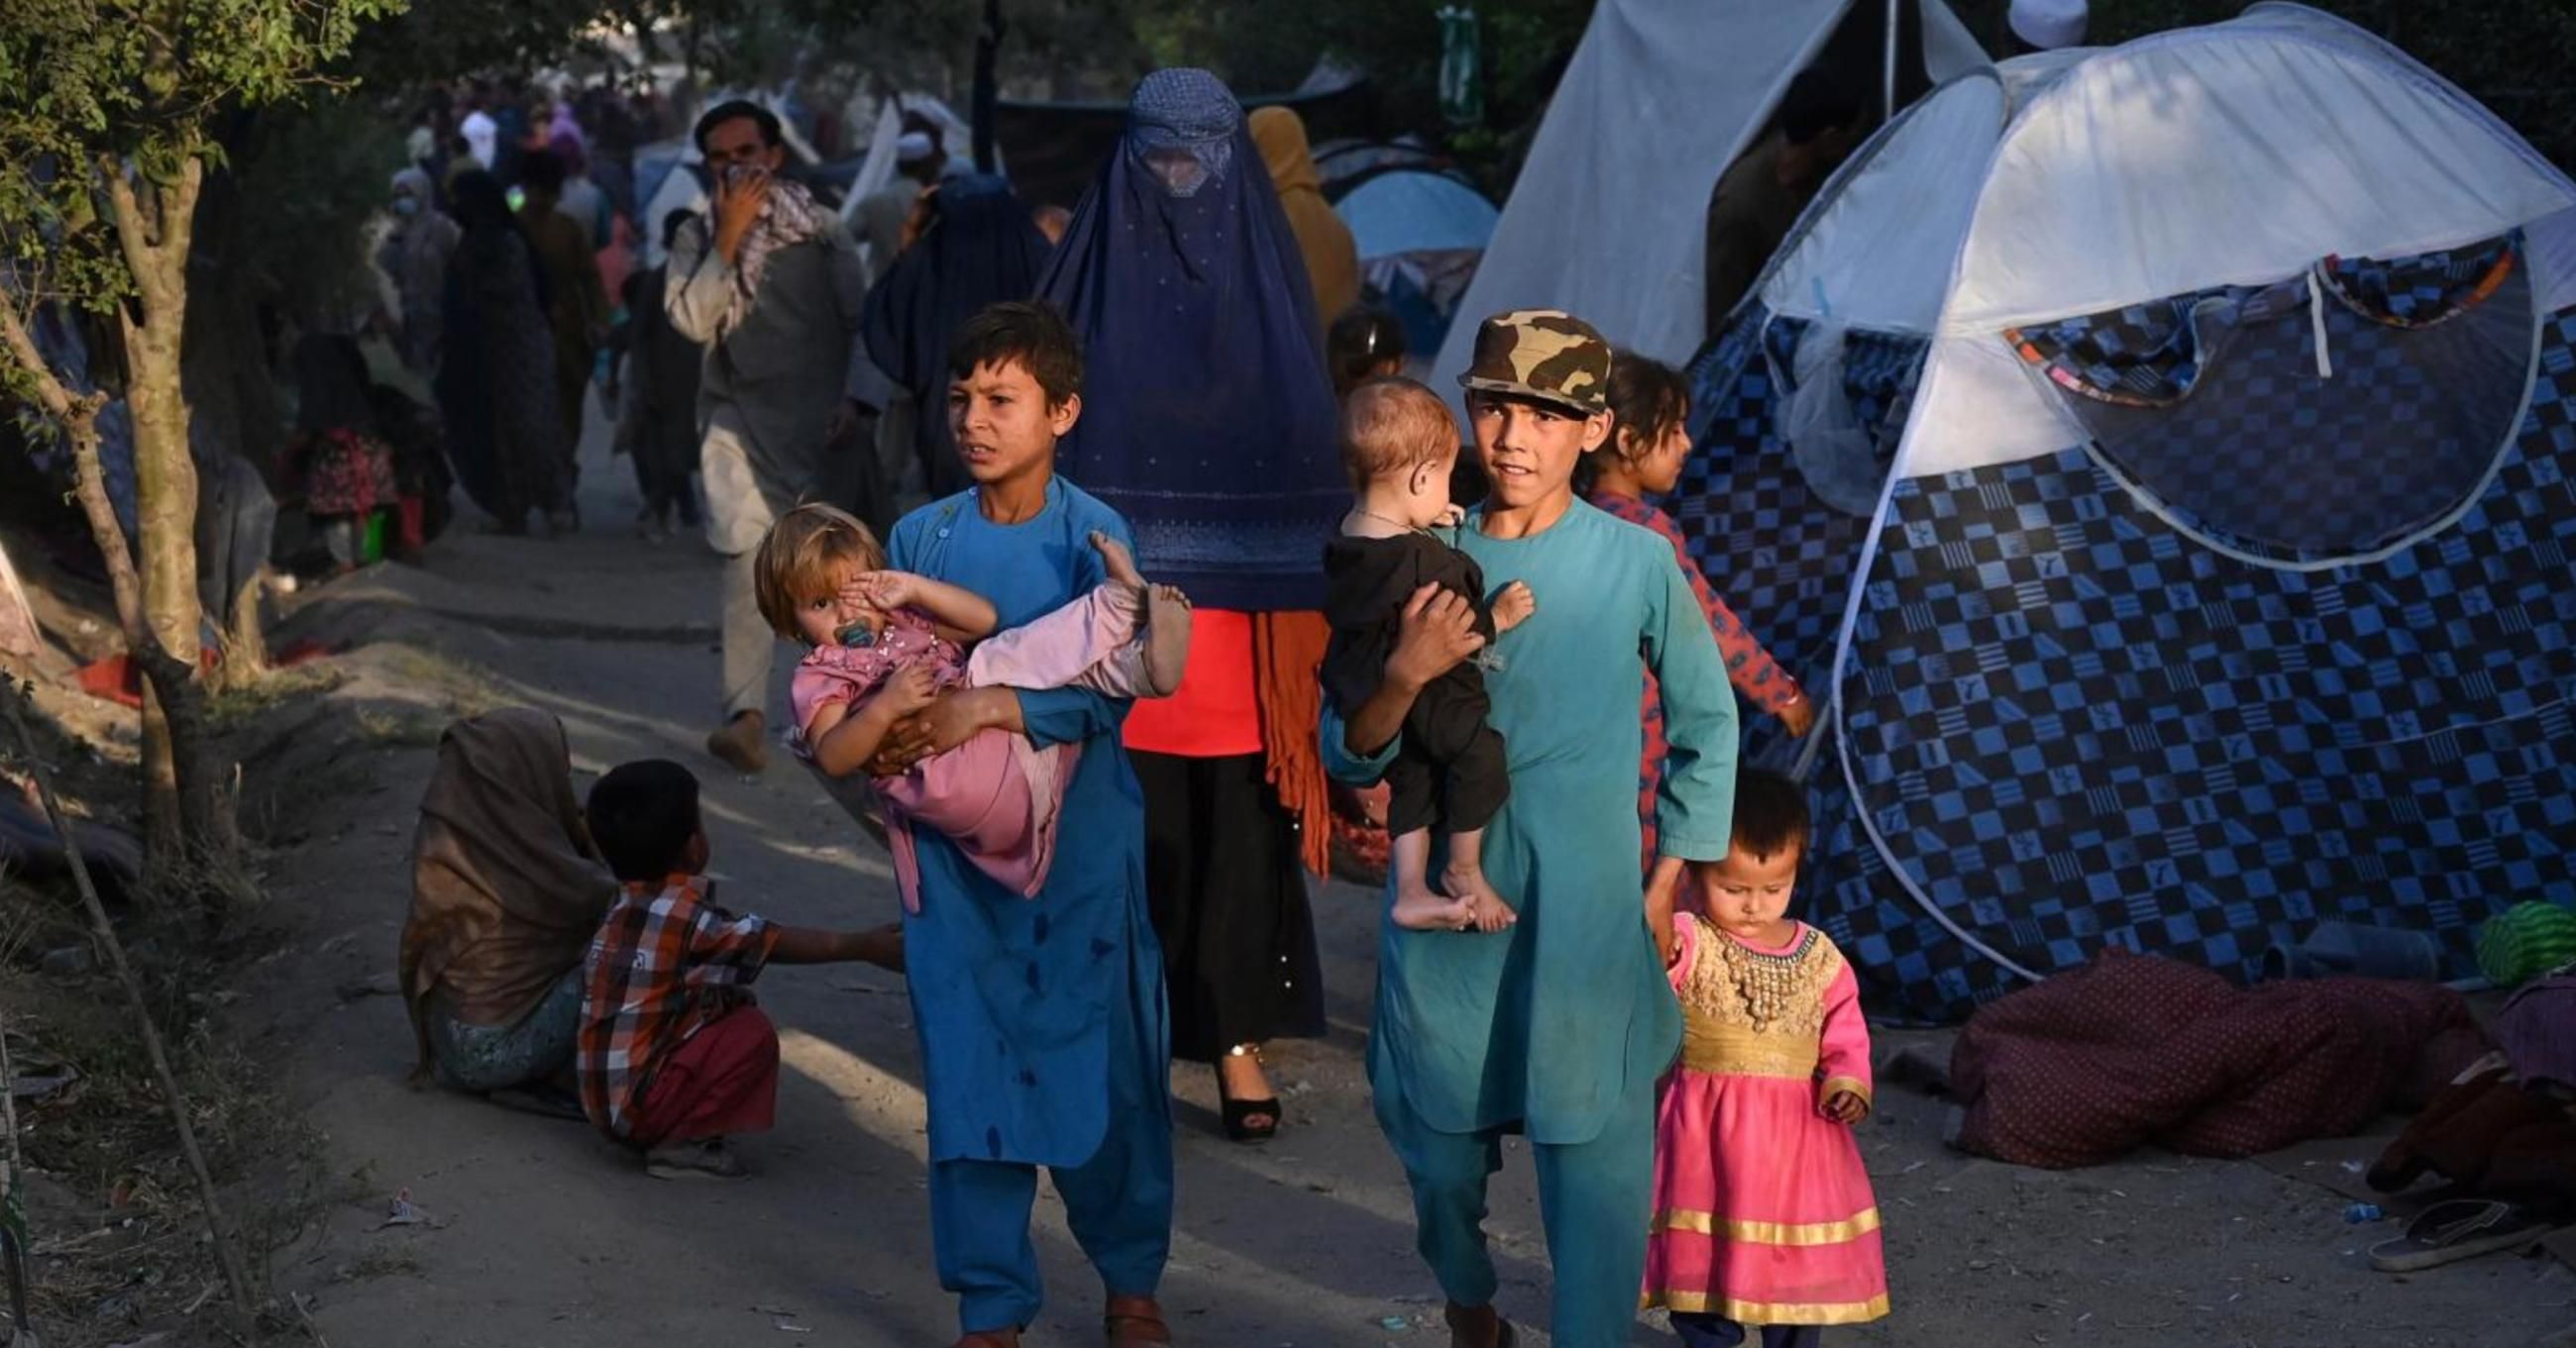 Afghanistan humanitarian crisis 